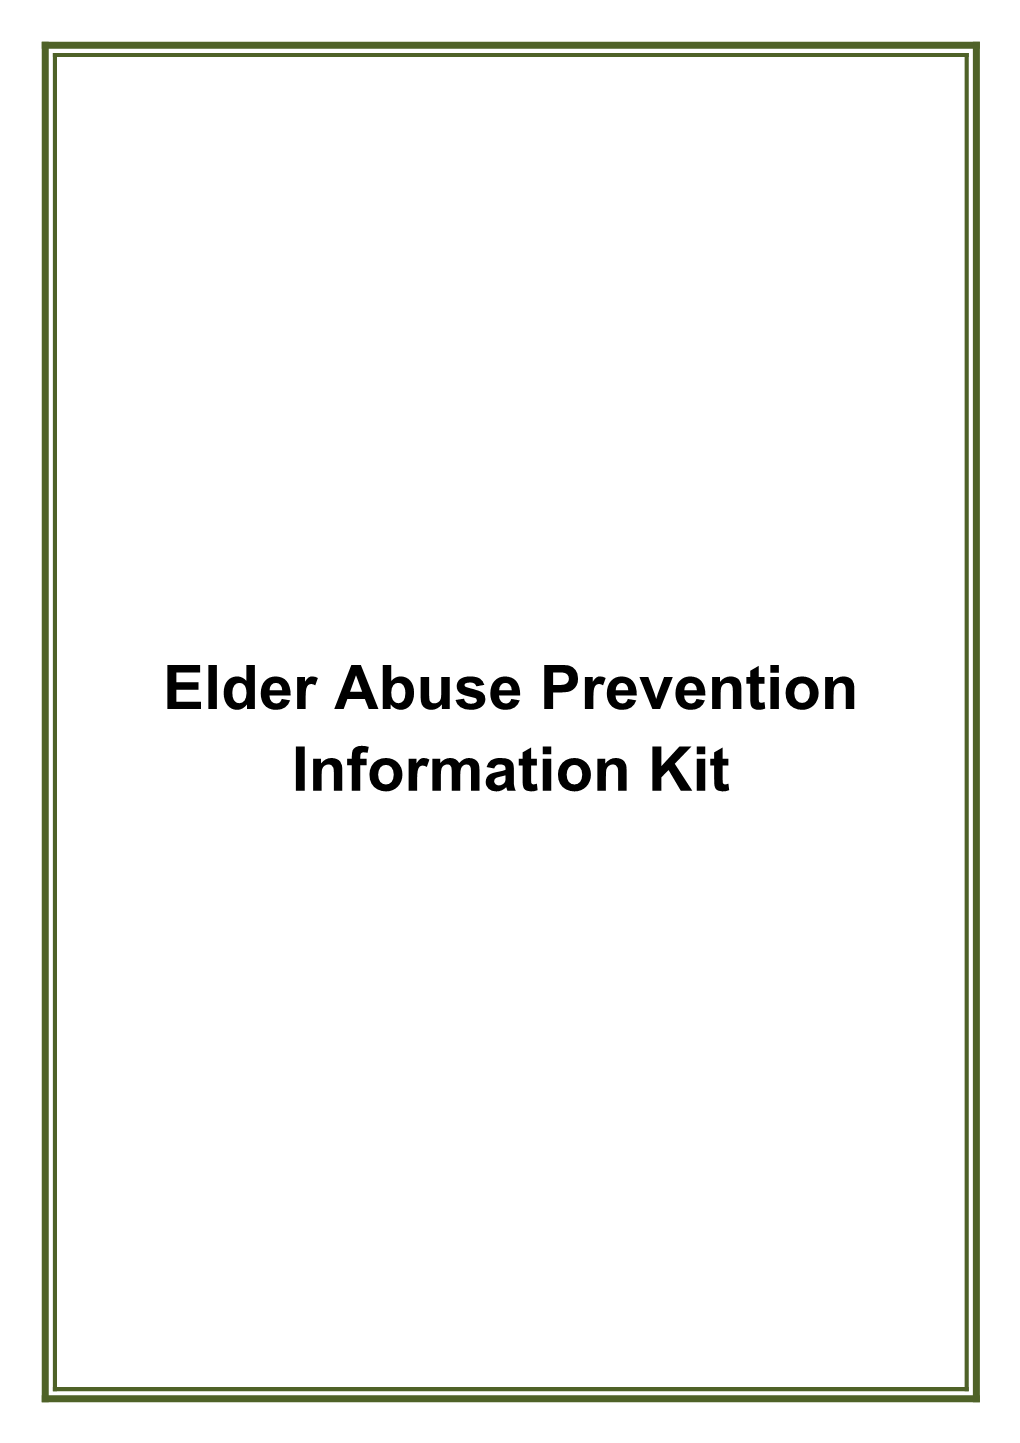 Elder Abuse Prevention Information Kit